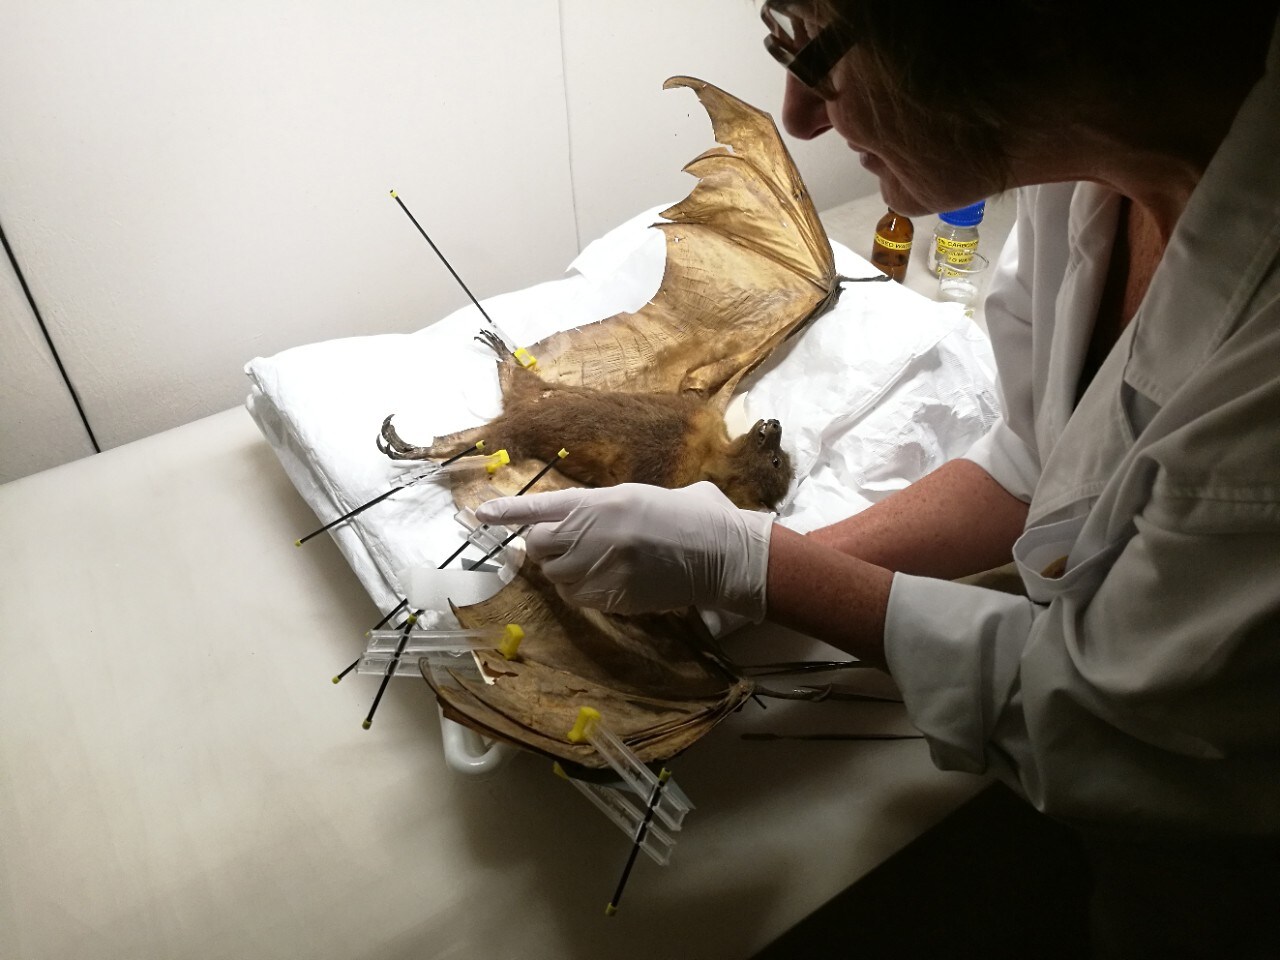 Sasha Stollman conserves a bat specimen